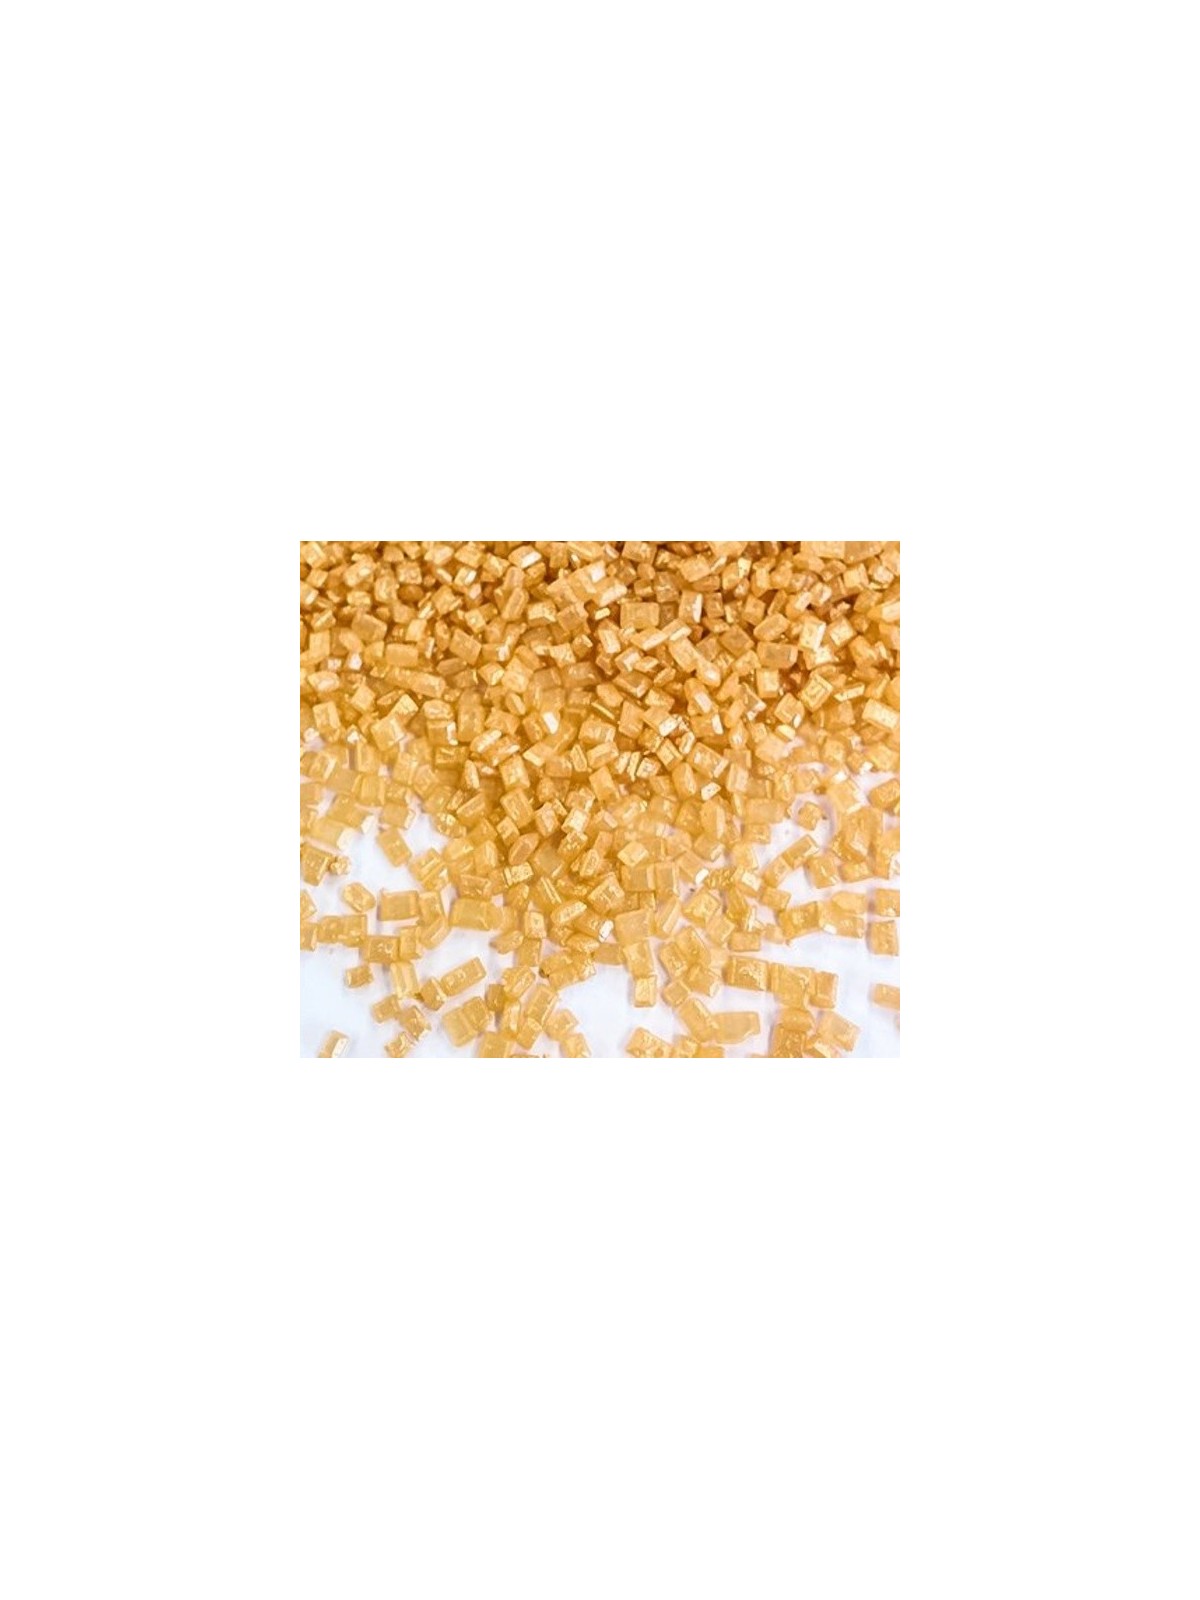 Zuckerkristalle Gold Mittel - 100g